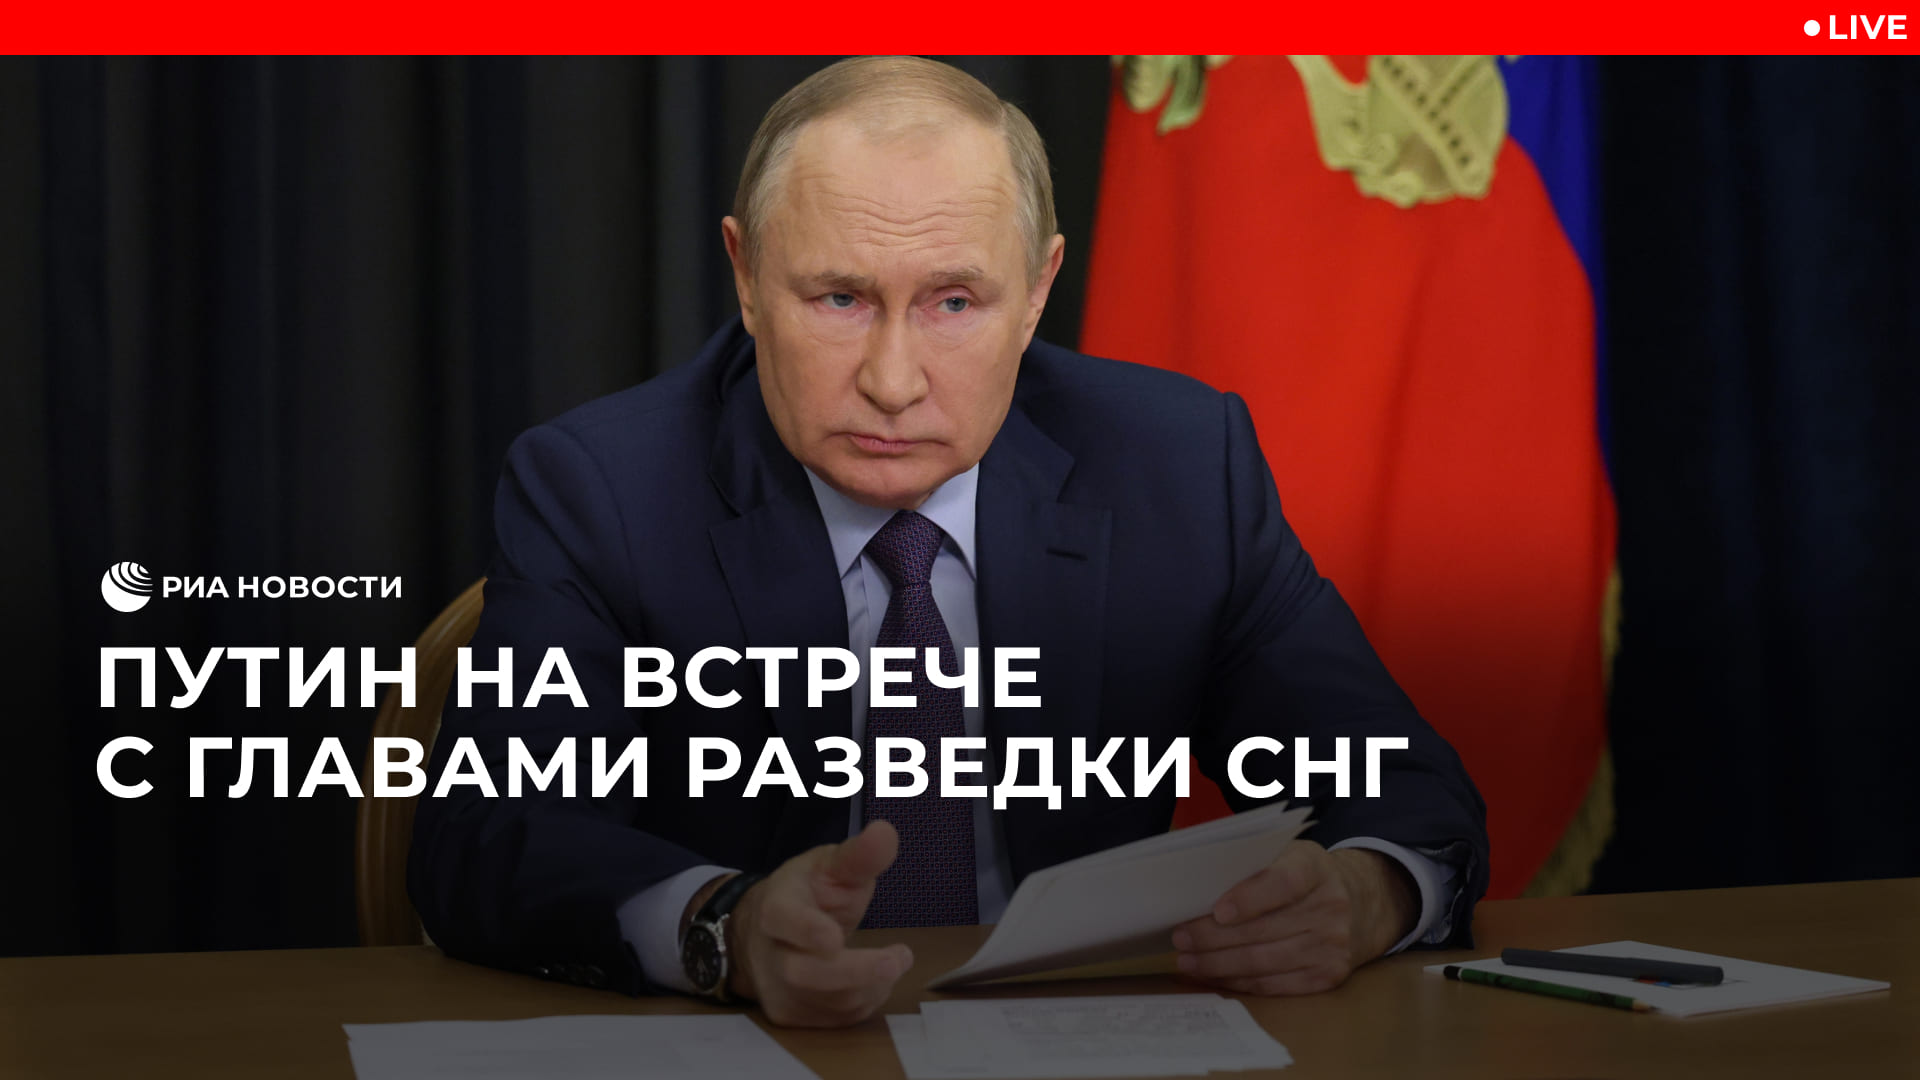 Путин на встрече с главами разведки СНГ